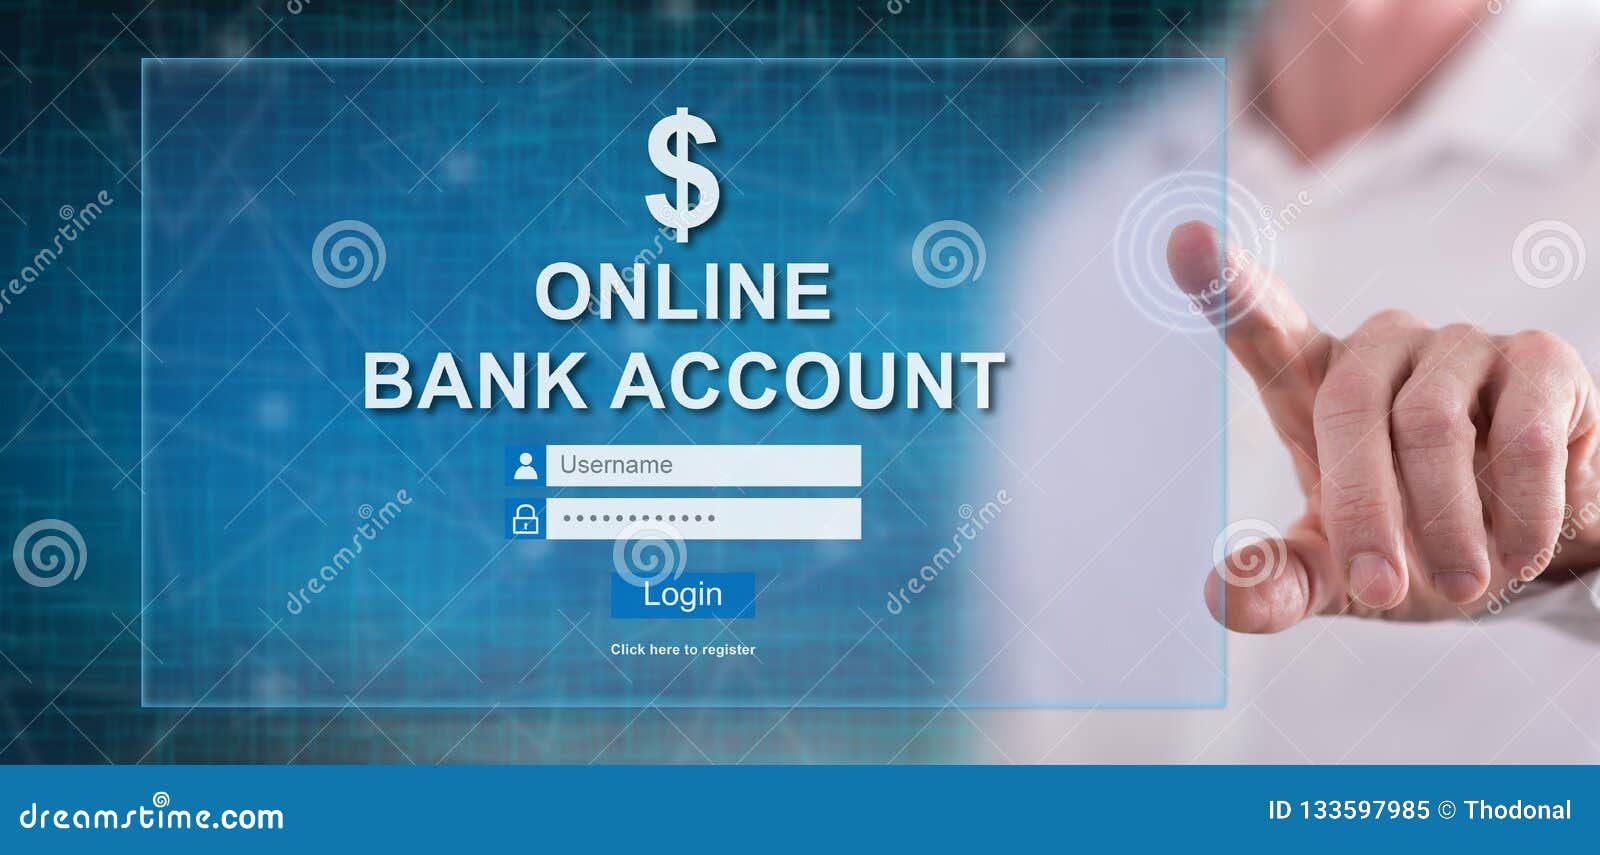 man touching an online bank account website